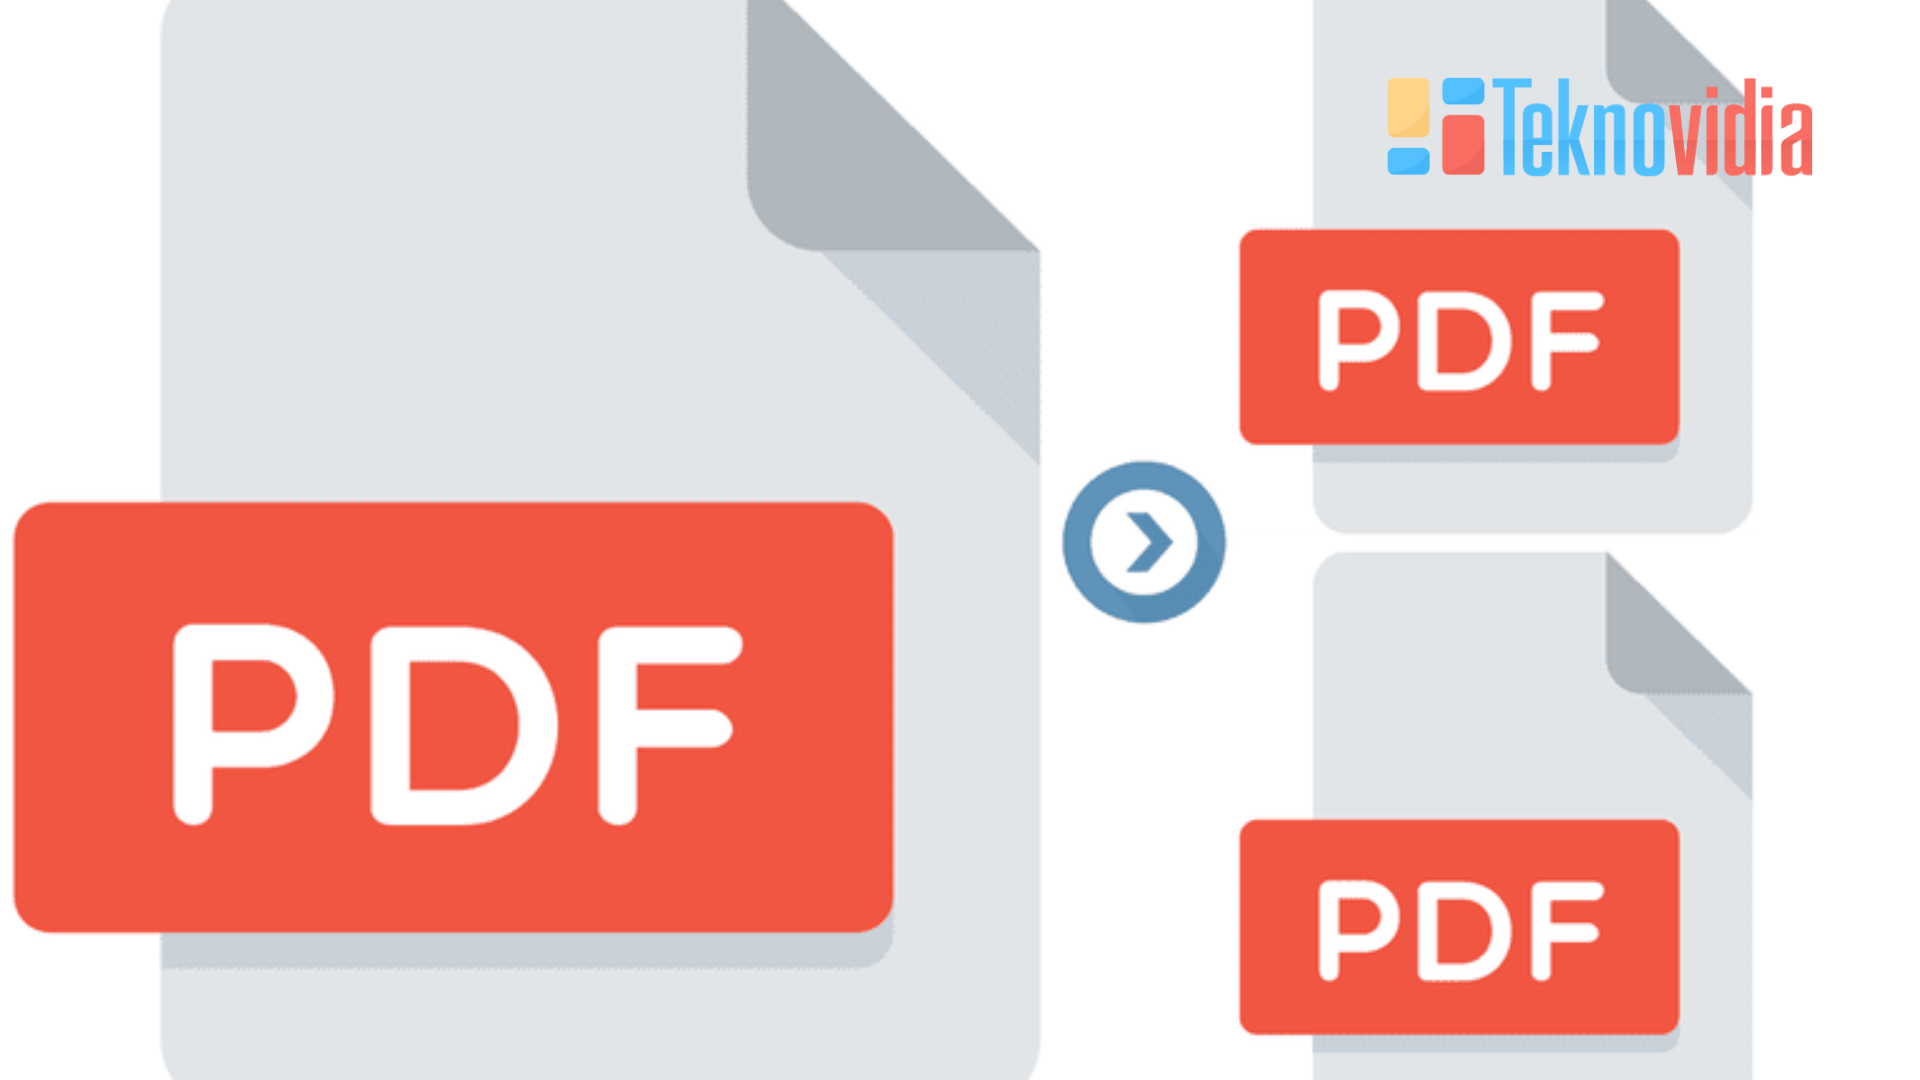 cara memisahkan file pdf